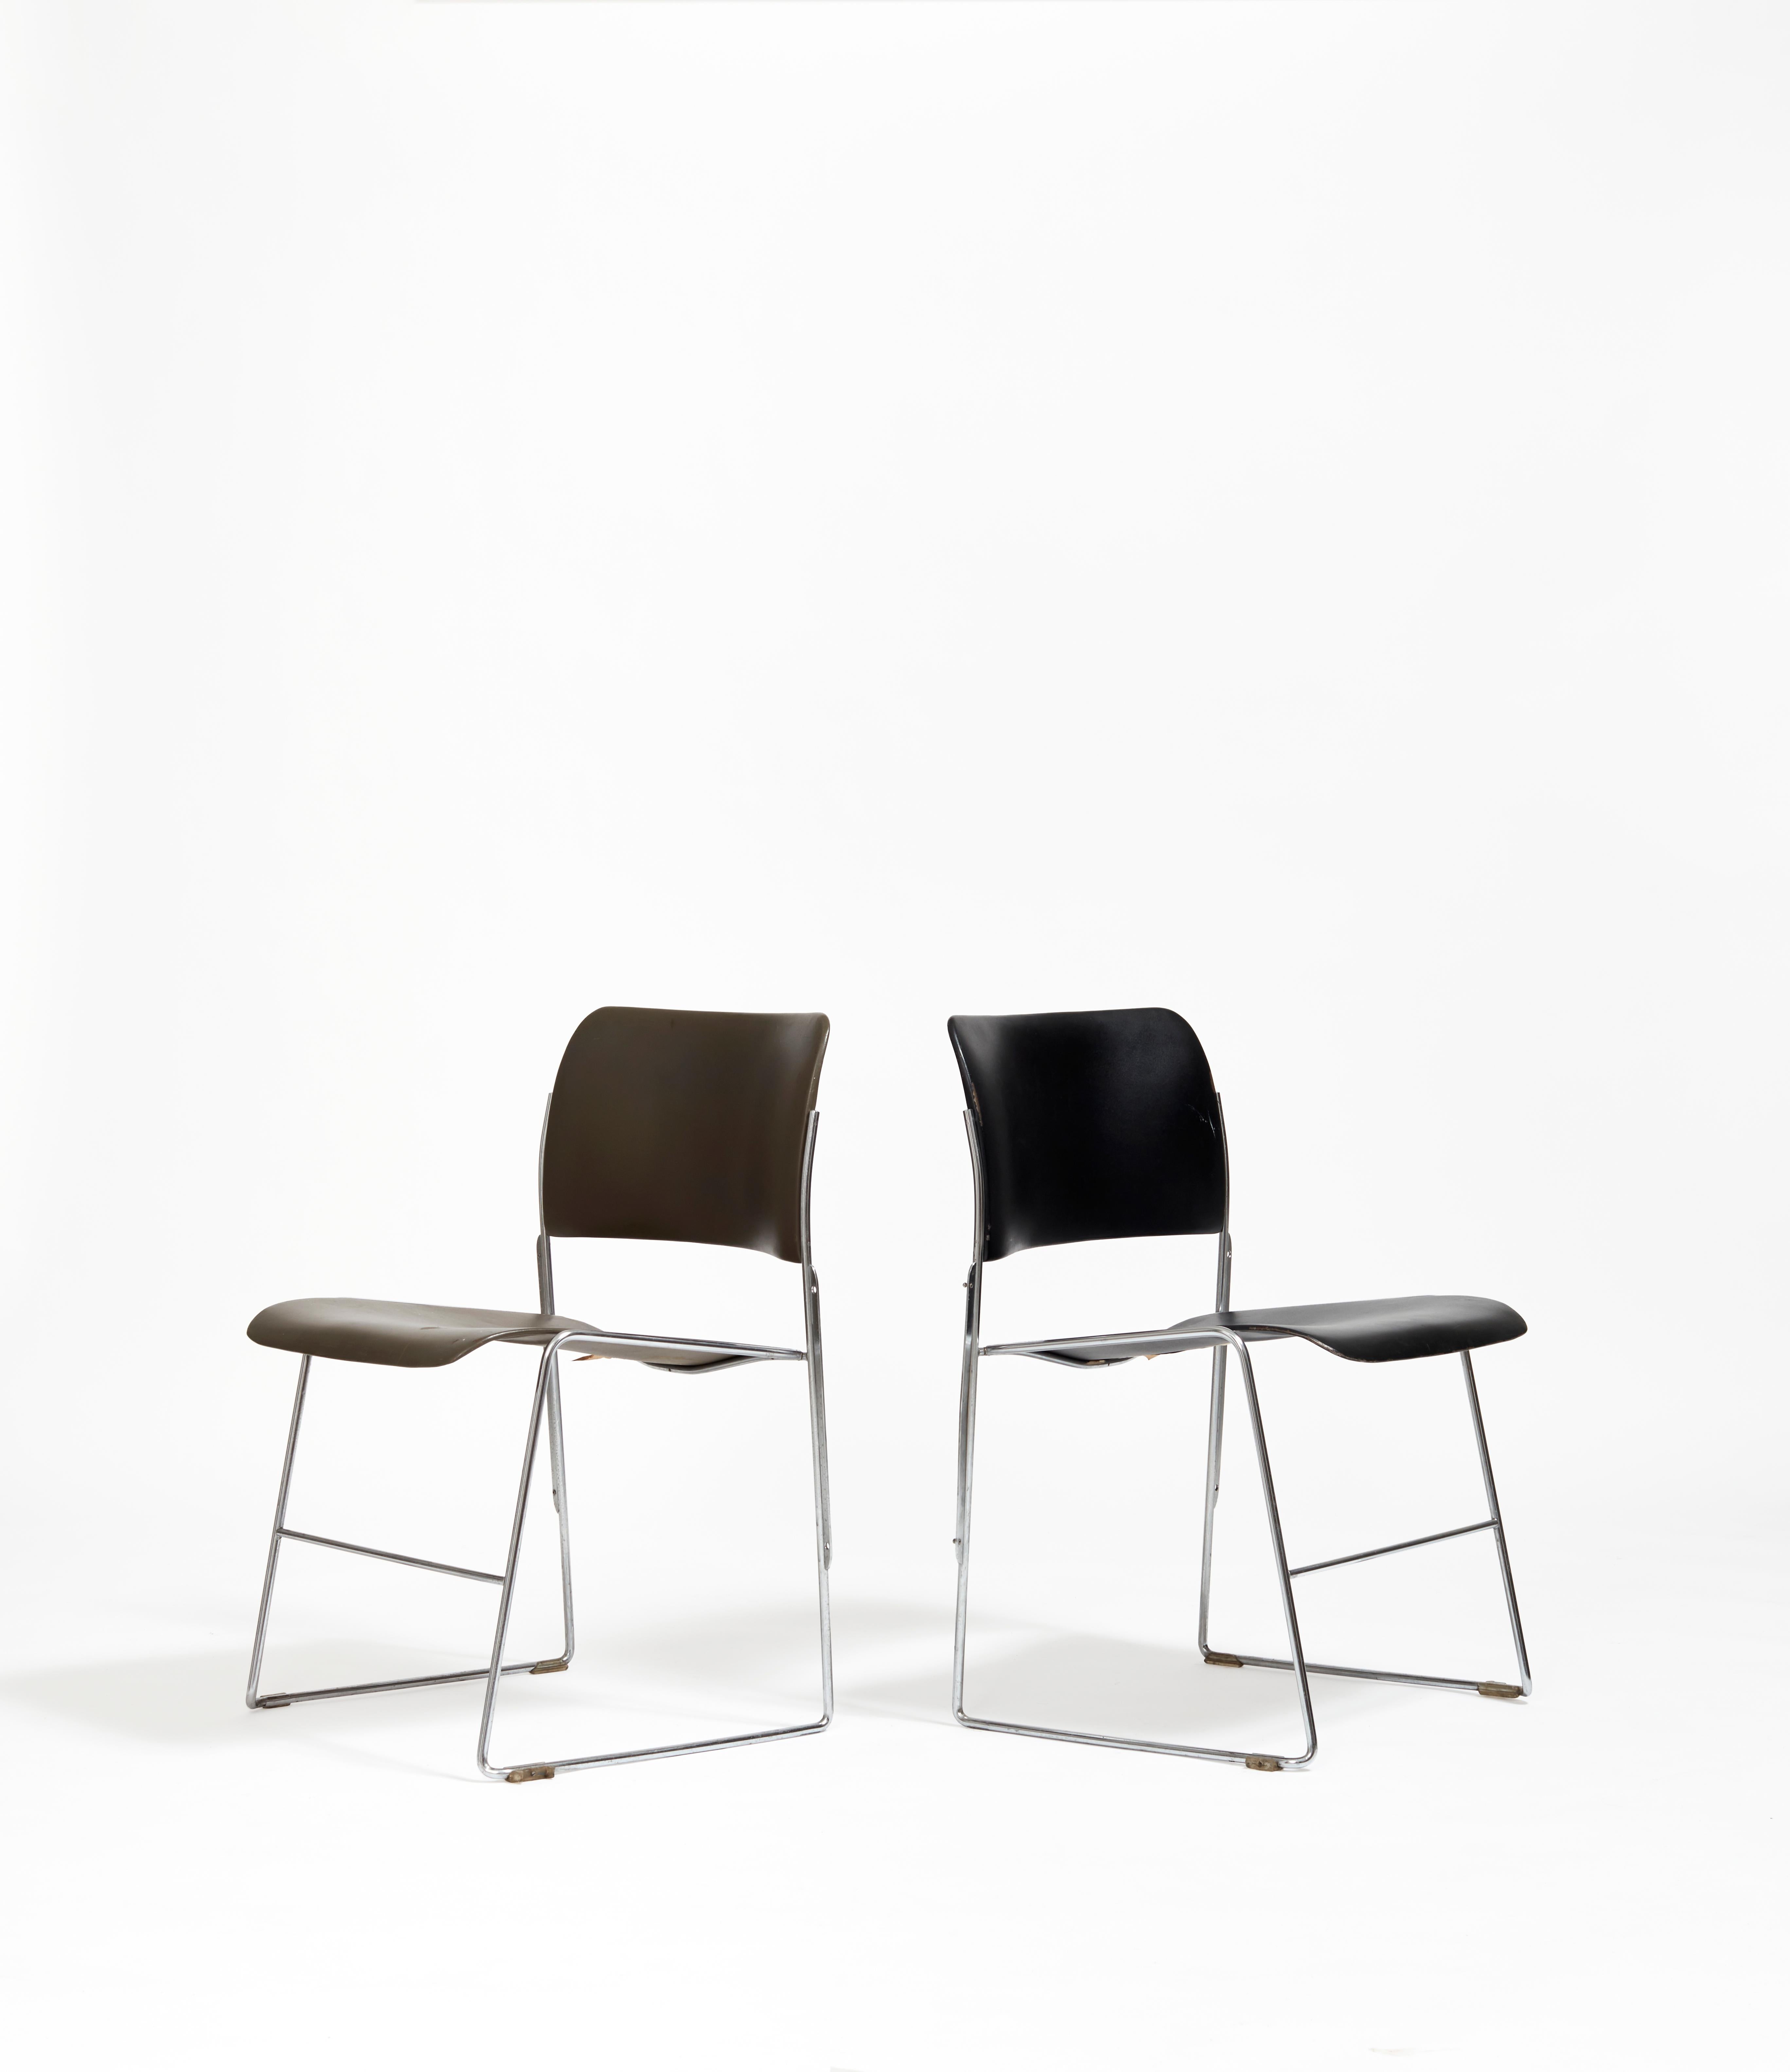 Der 40/4 Chair gilt als der erste wirklich stapelbare Stuhl und ist ein Meisterwerk an Eleganz und Ergonomie. Er umfasst die gesamte Bandbreite der Multifunktionalität, die modernistische Designer im 20. und 21.